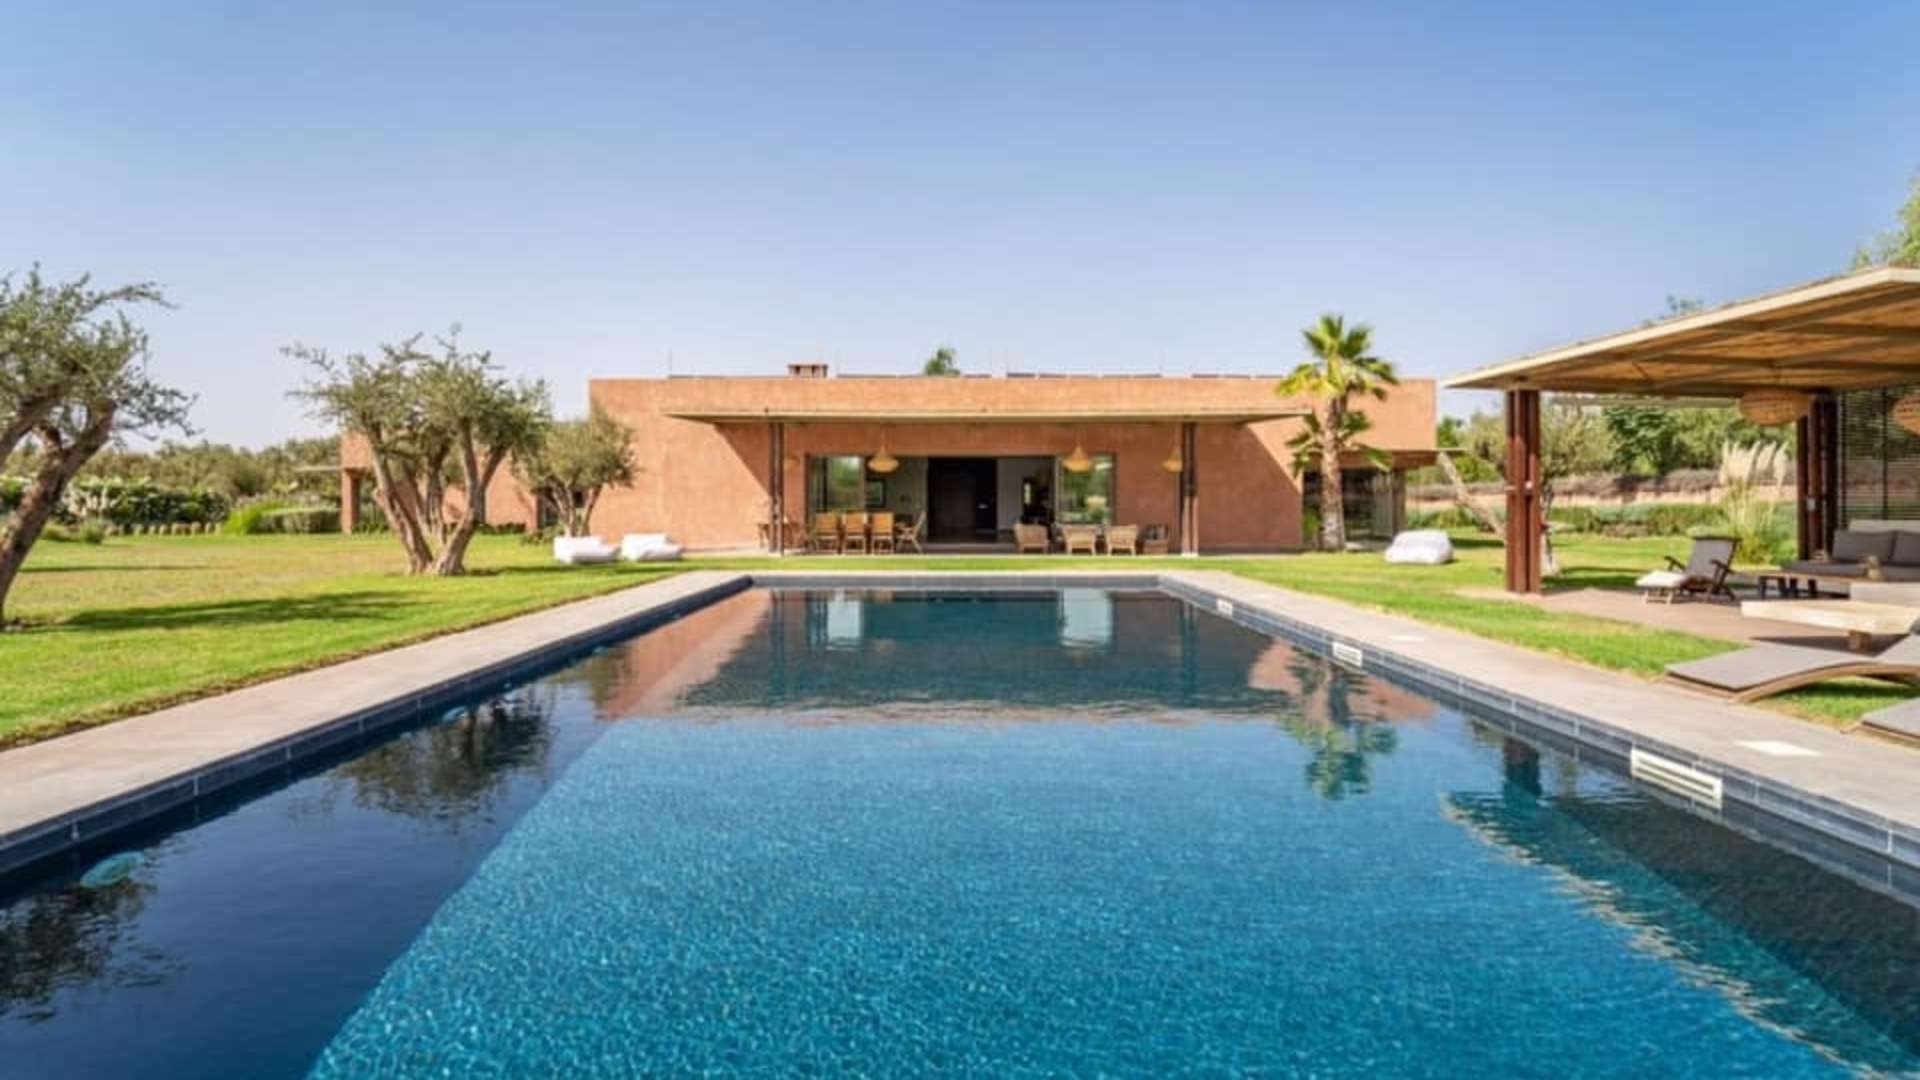 Location de vacances,Villa,Villa Contemporaine et écologique de 6 suites à Marrakech,Marrakech,Sidi Youssef Ben Ali